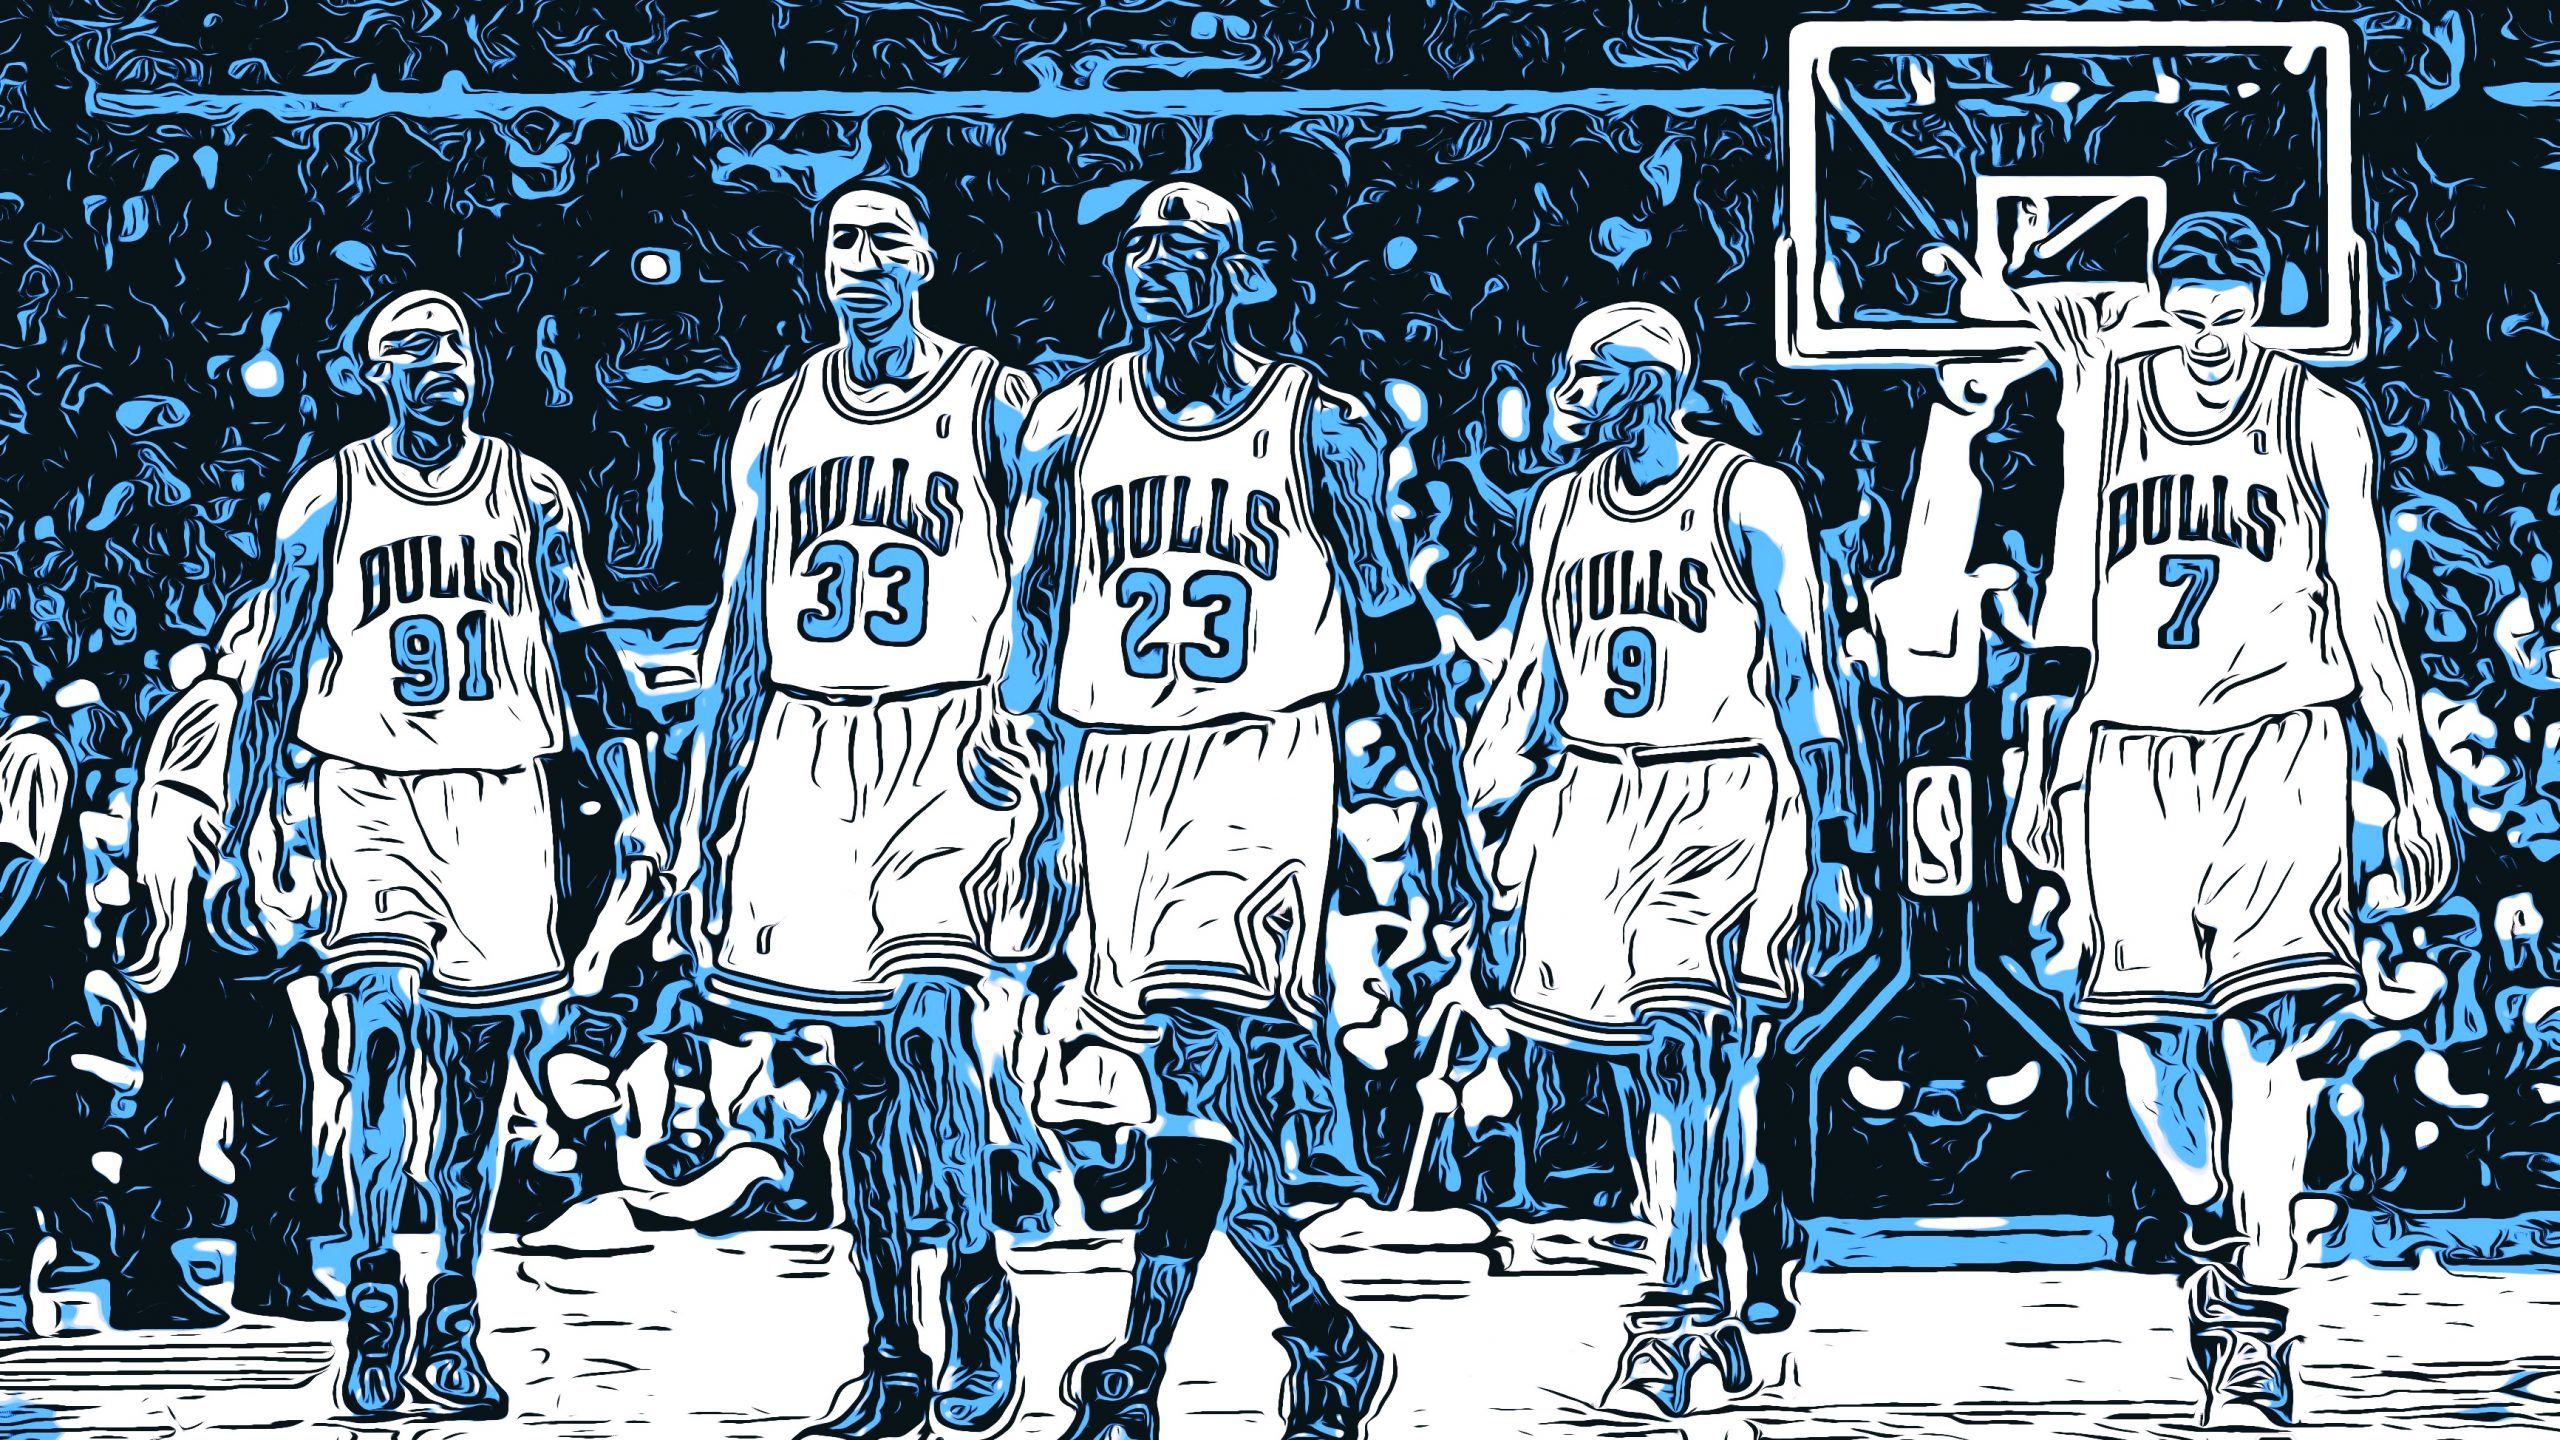 Jordan and the Bulls' “Last Dance, ” NFL Draft trainwreck potential